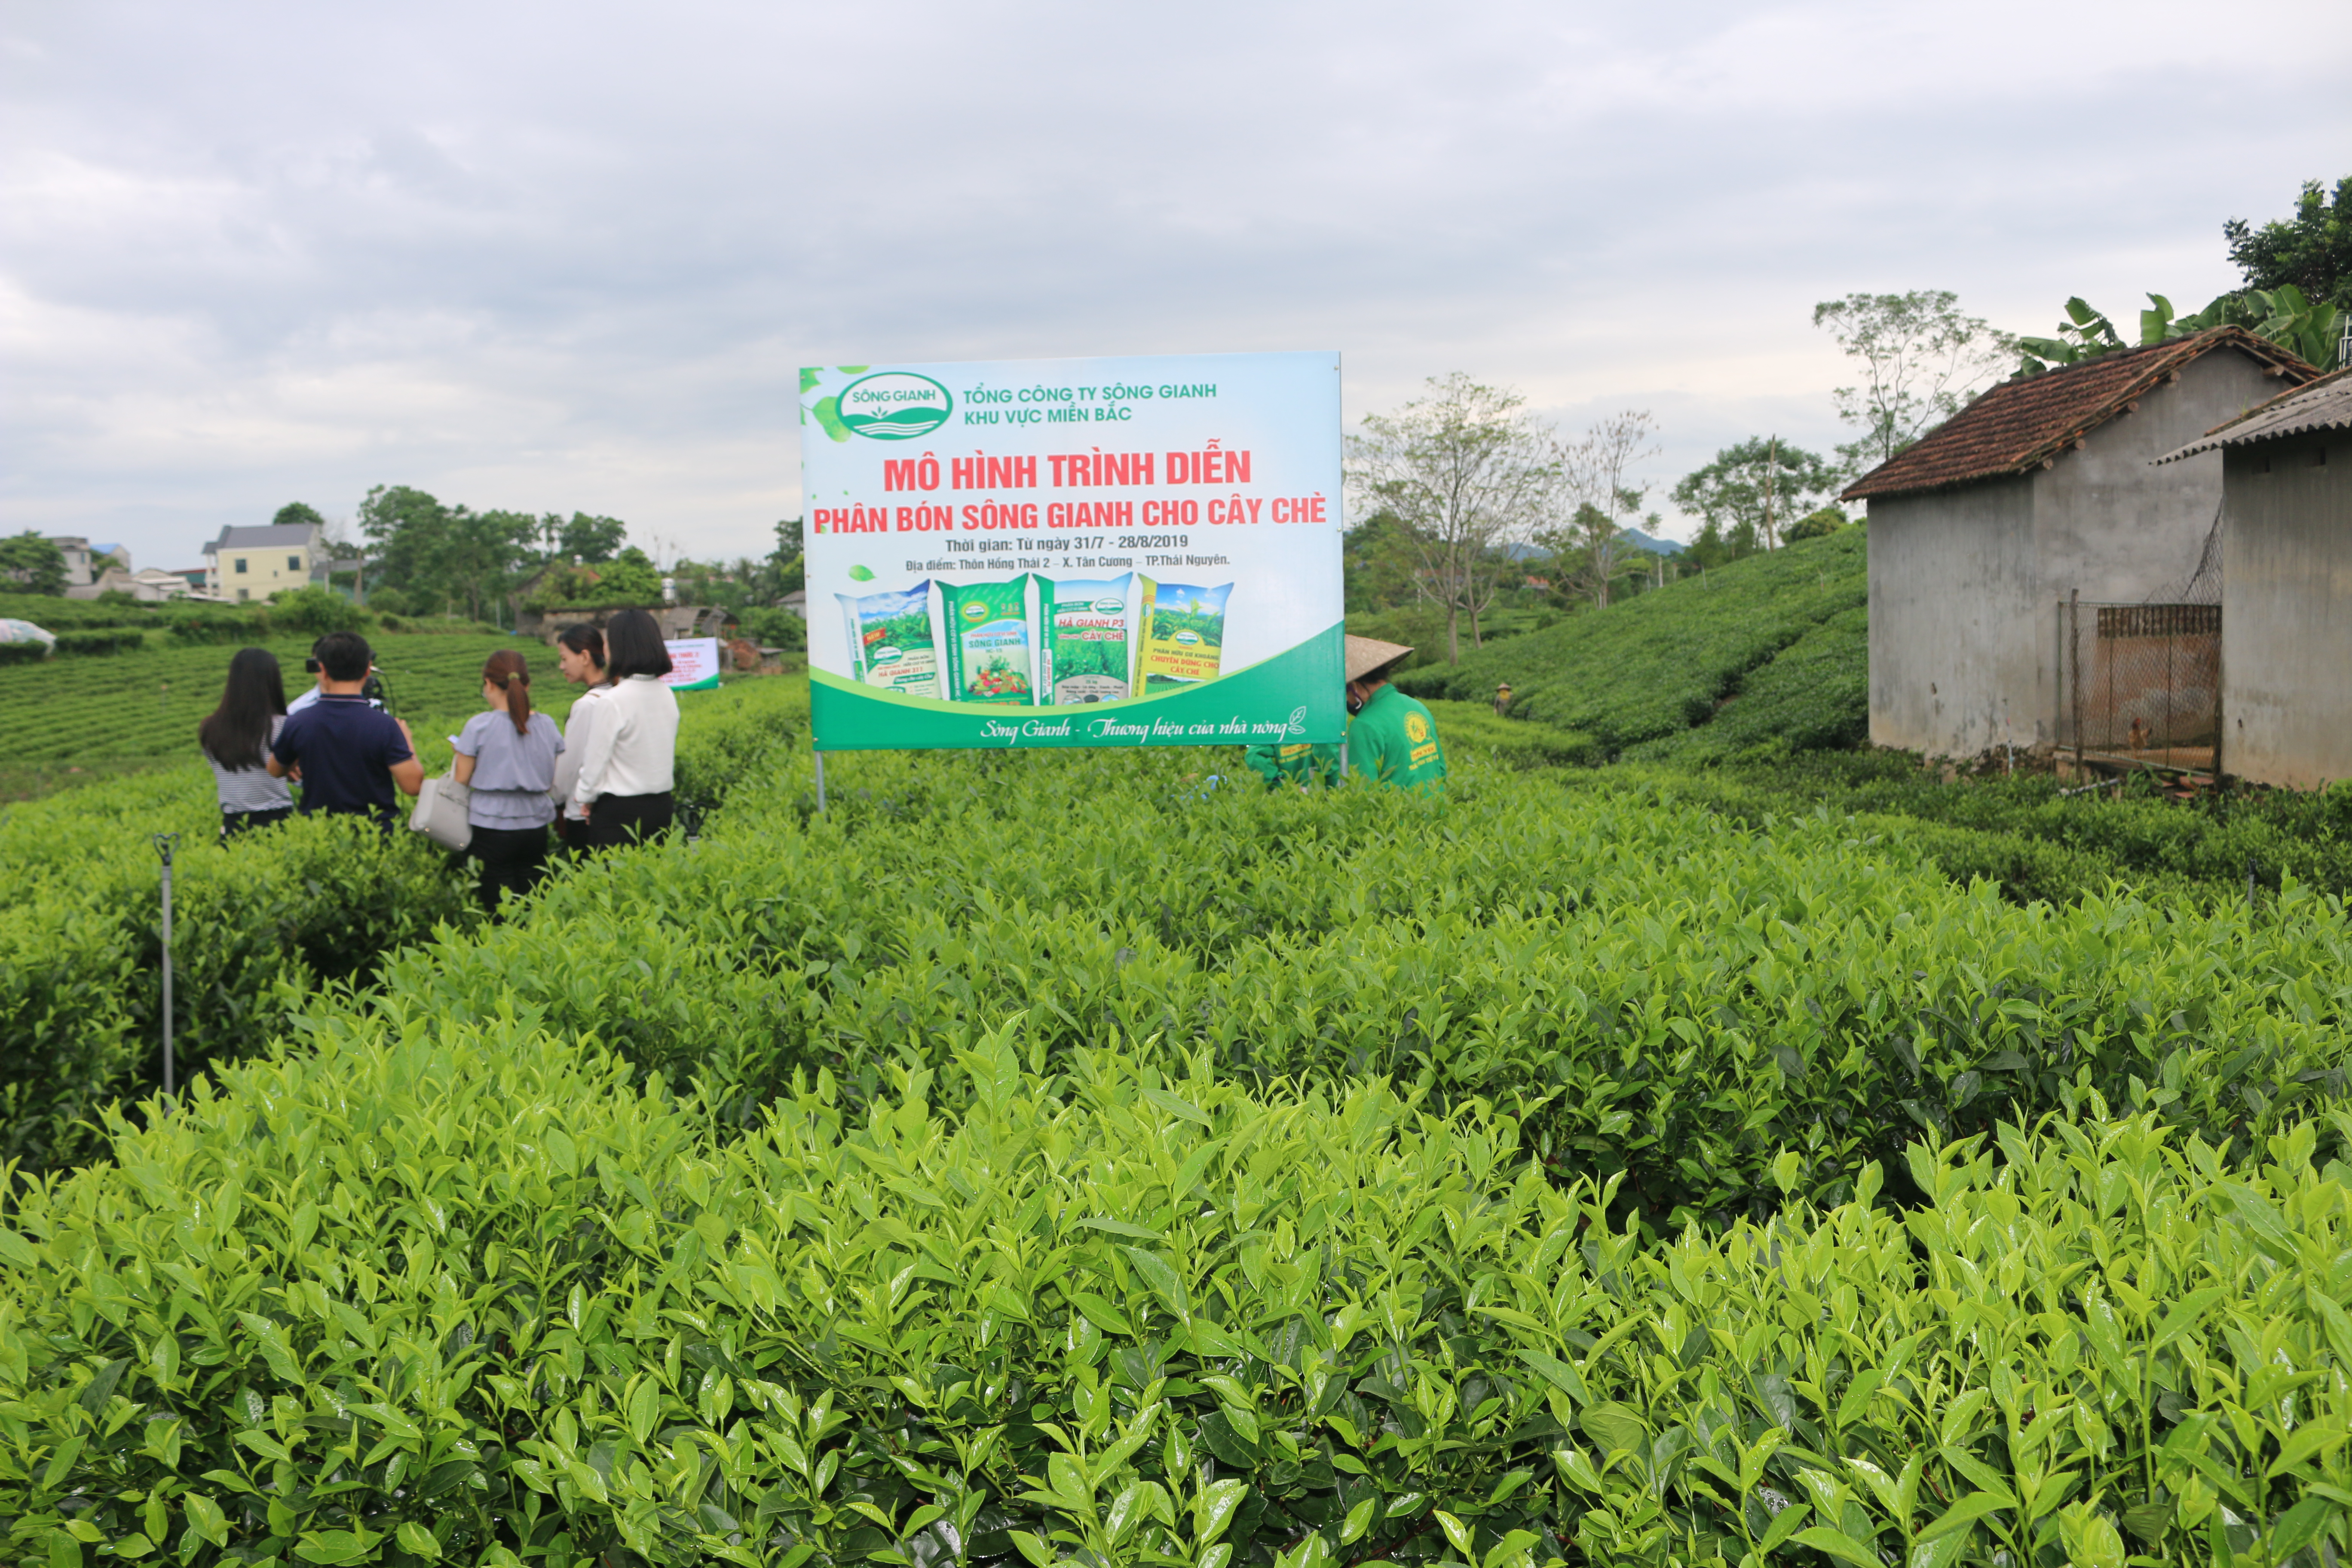 Chi nhánh Bắc Ninh - Tổng kết mô hình trình diễn phân bón hữu cơ cho cây chè tại Thái Nguyên 